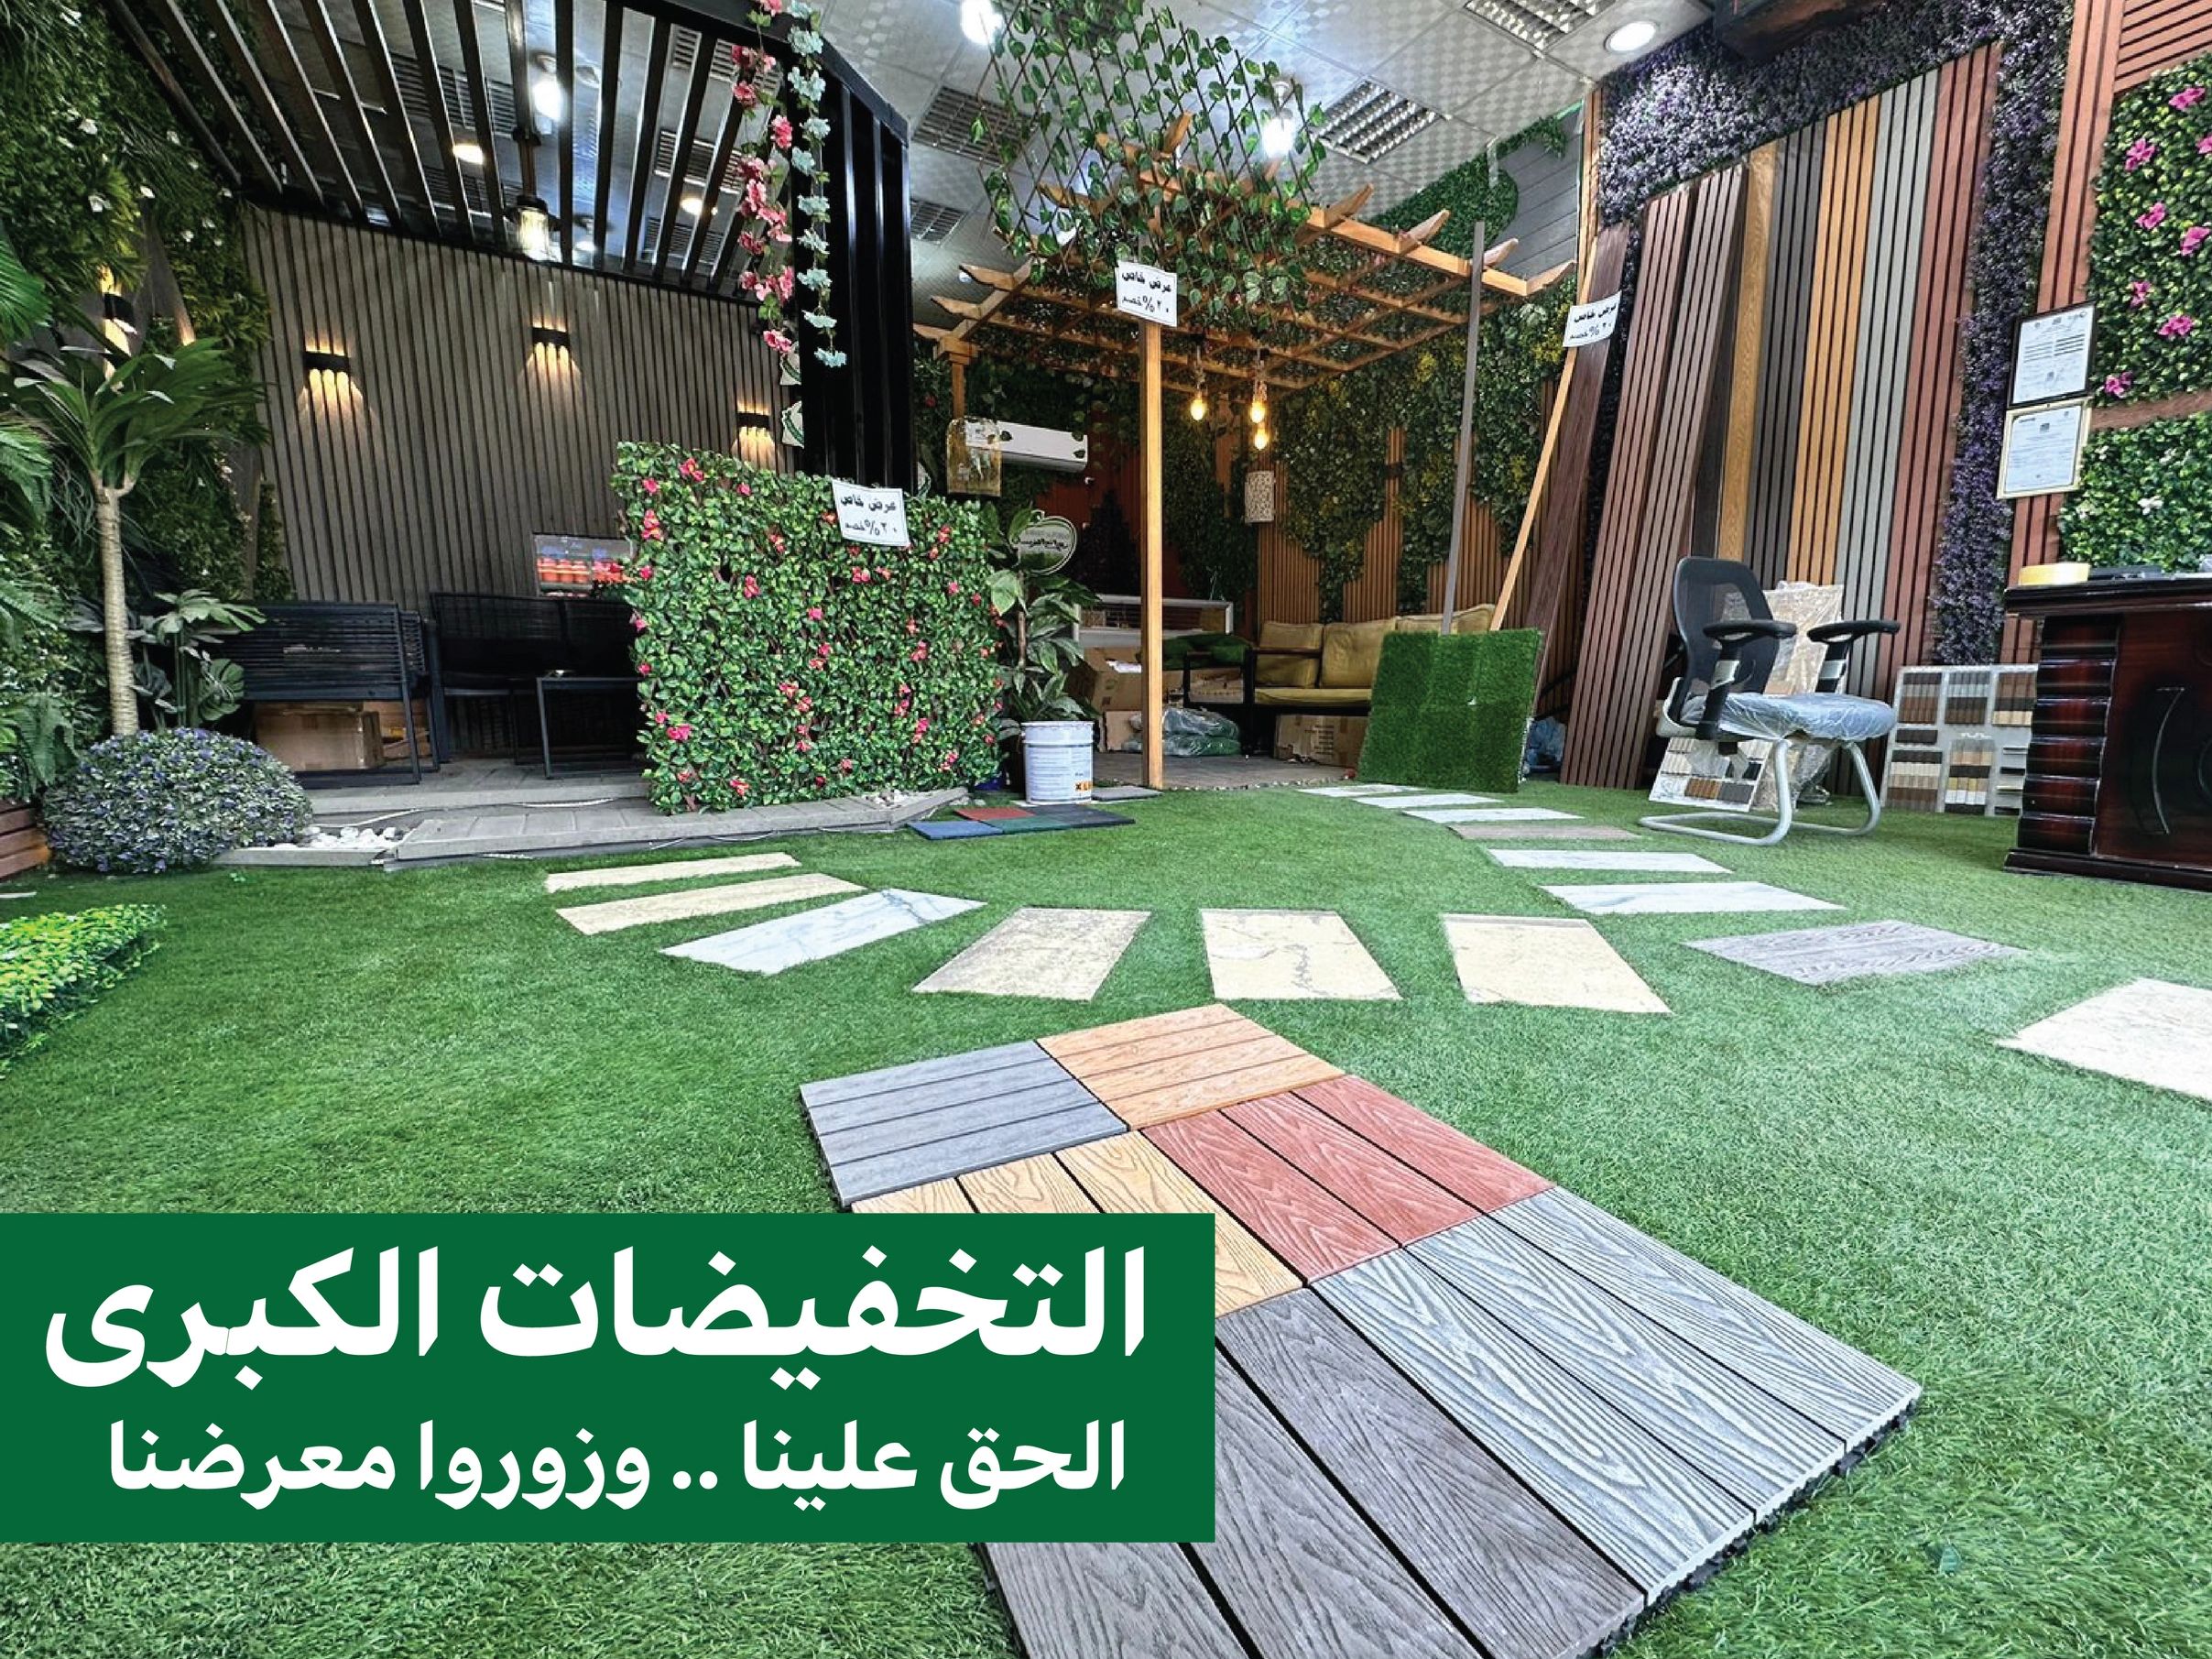 أفضل شركة تنسيق حدائق الرياض - عشب صناعي - عشب جداري - بديل الخشب - بديل الرخام - مظلات - شلالات